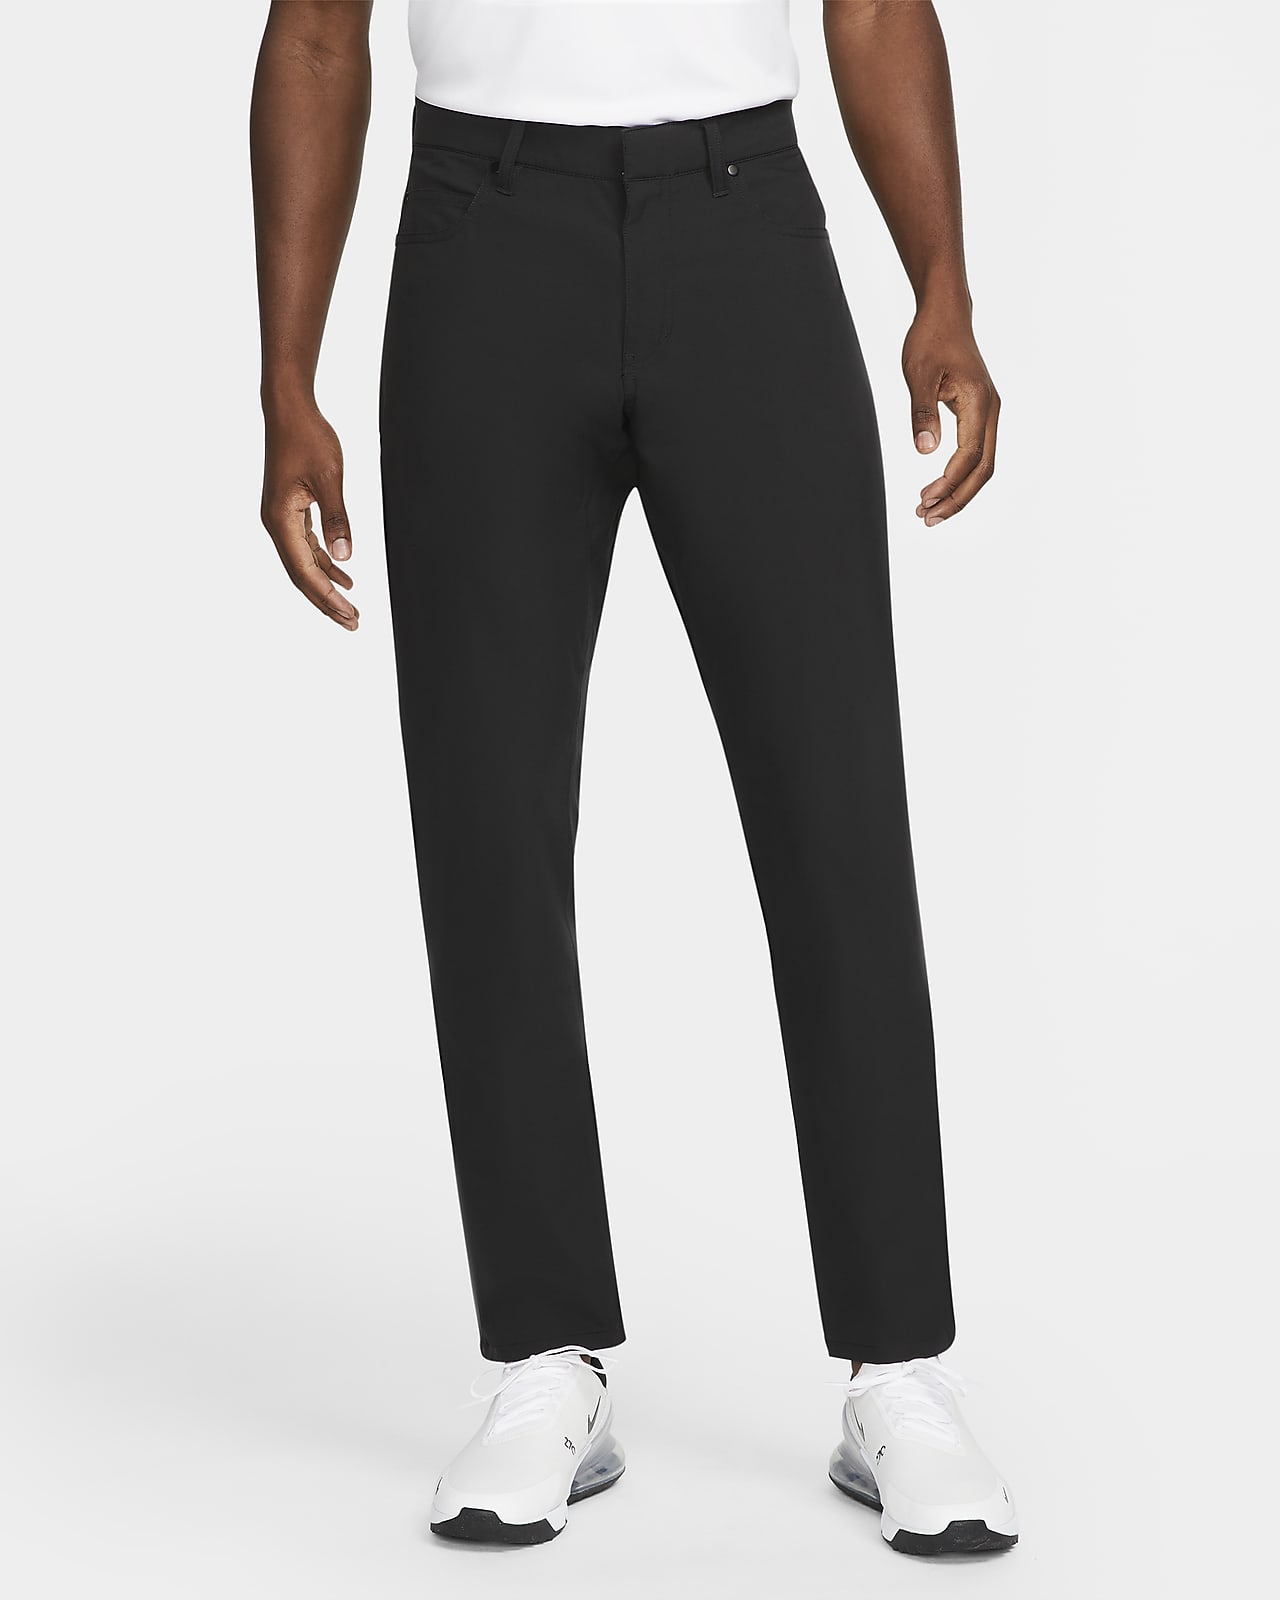 Nike Dri-FIT Repel Men's 5-Pocket Slim-Fit Golf Trousers